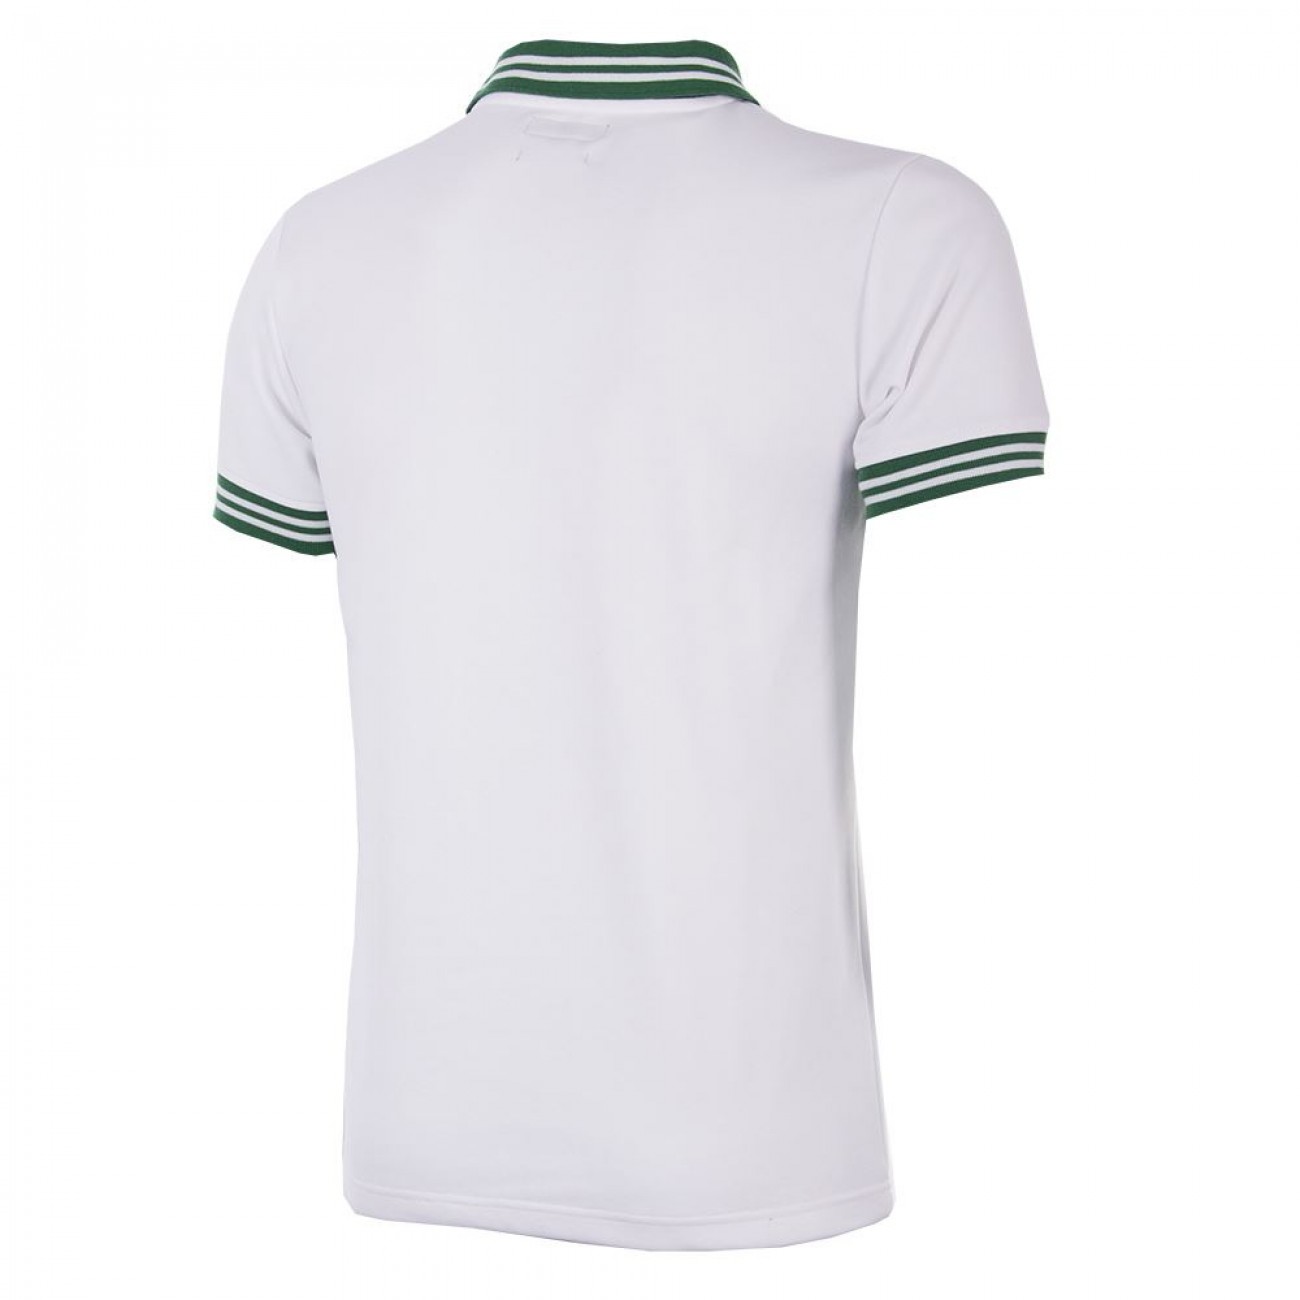 Nigeria Retro football Shirt | Retrofootball®